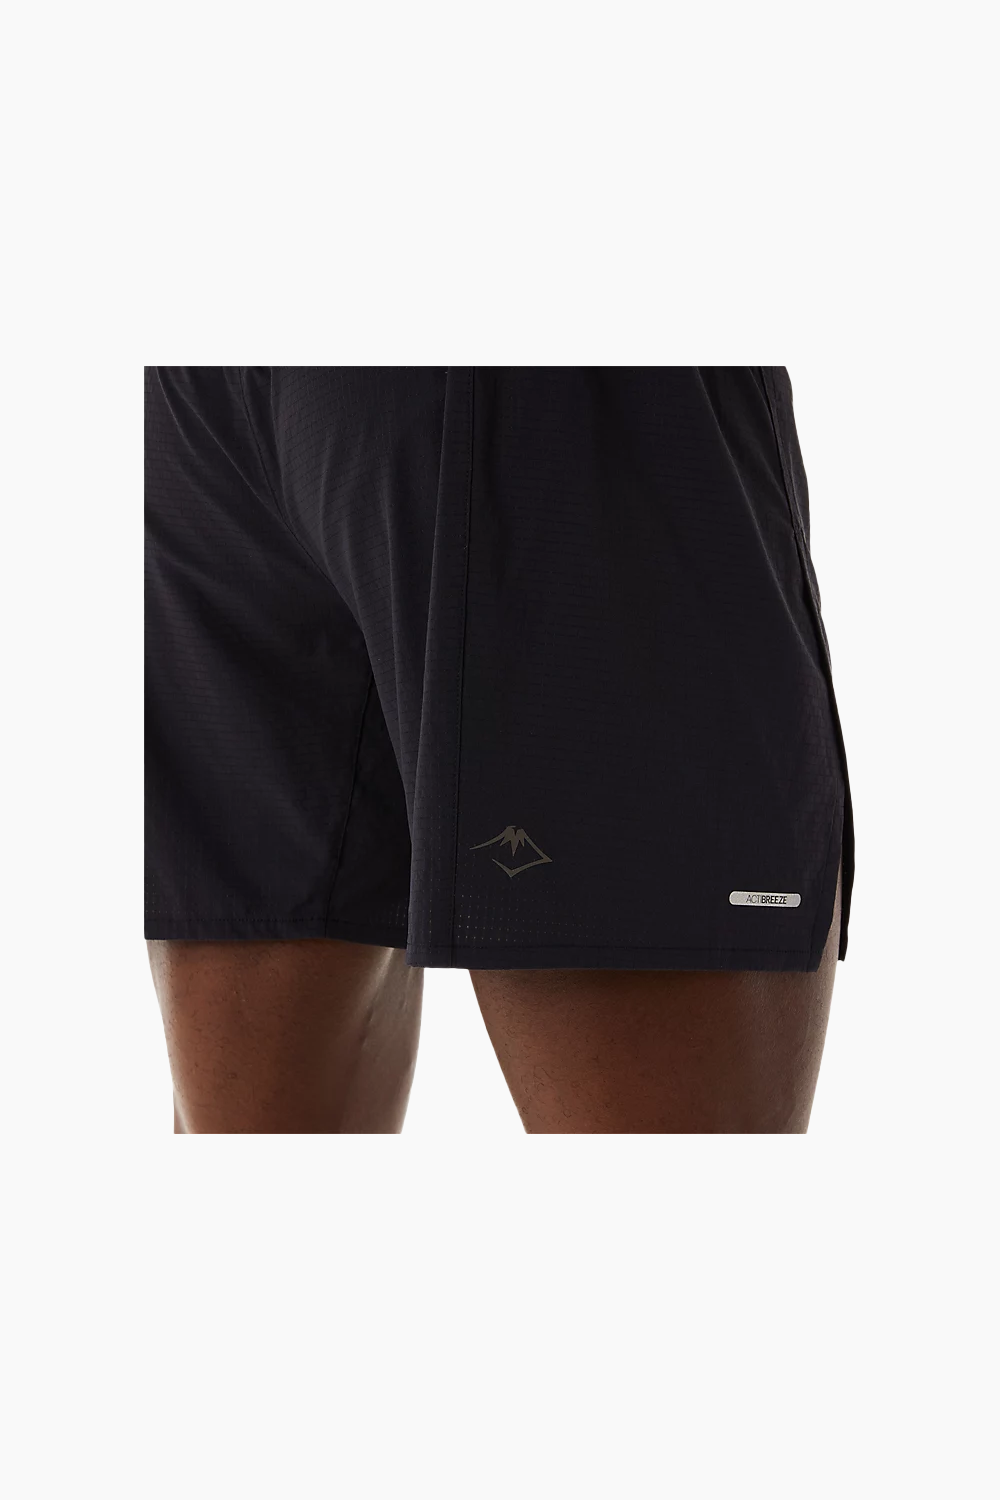 ASICS Men's Fujitrail Shorts in Black